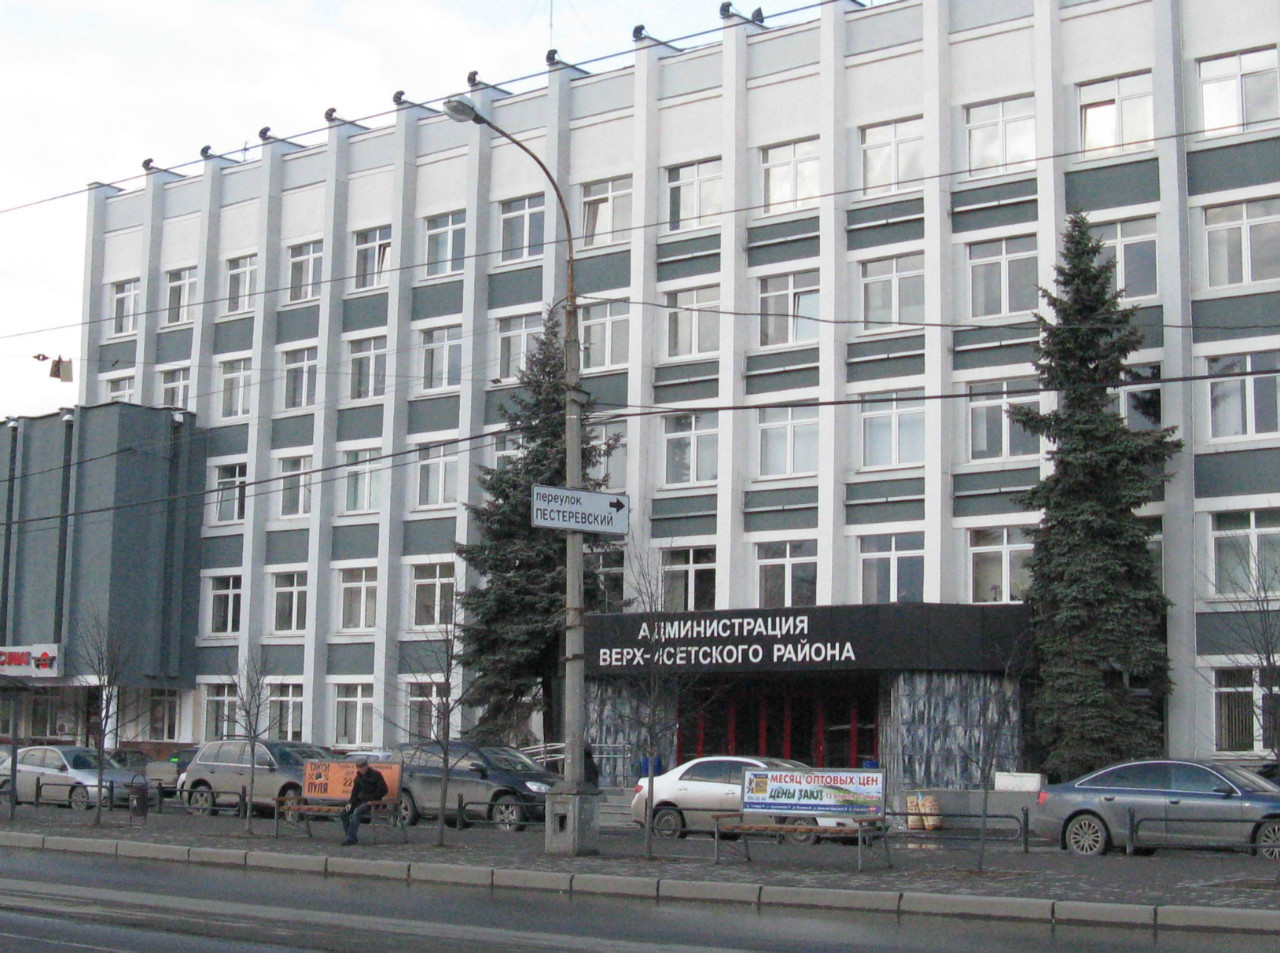 Администрация верх-Исетского района Екатеринбурга